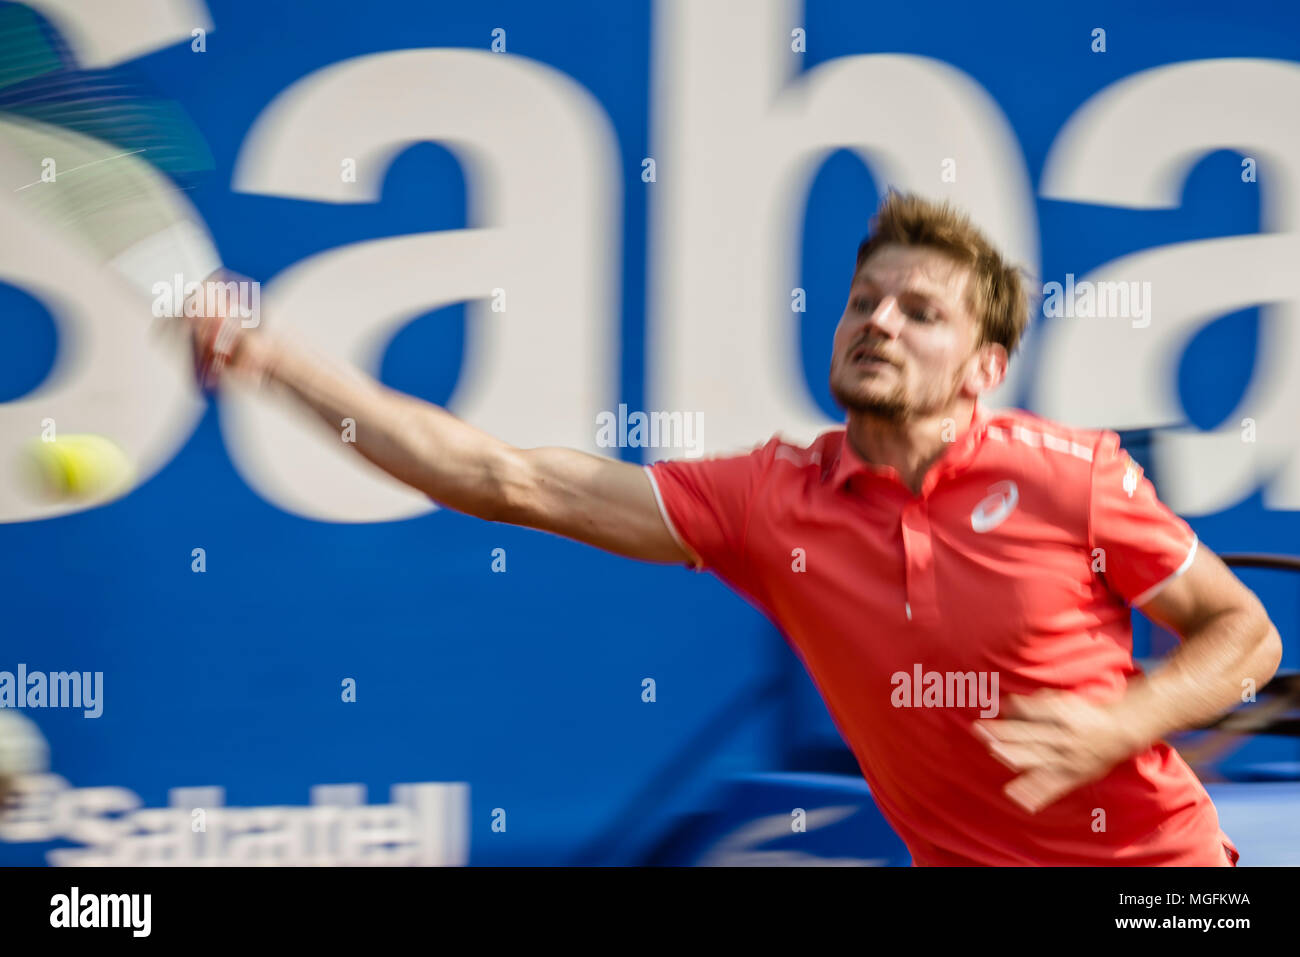 Barcelone, Espagne. 28, avril 2018 : DAVID GOFFIN (BEL) renvoie la balle à Rafael Nadal (ESP) dans leur demi-finale de l'Open de Barcelone Banc Sabadell' 2018. Nadal a gagné 6:4, 6:0 Crédit : Matthias Rickenbach/Alamy Live News Banque D'Images